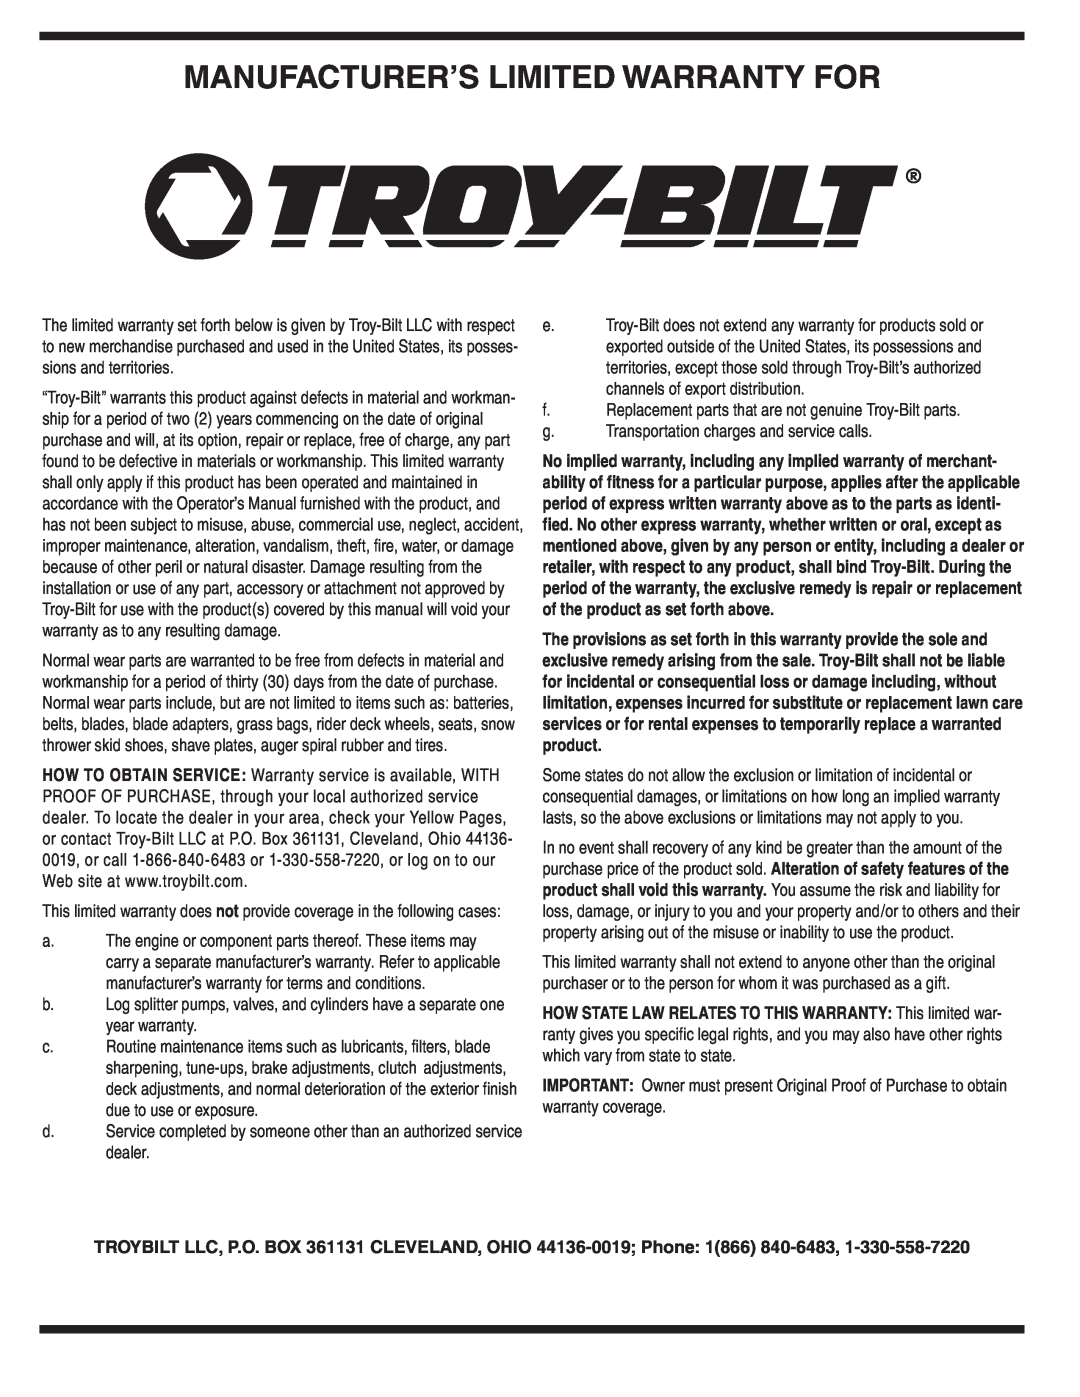 Troy-Bilt 554 manual Manufacturer’S Limited Warranty For 